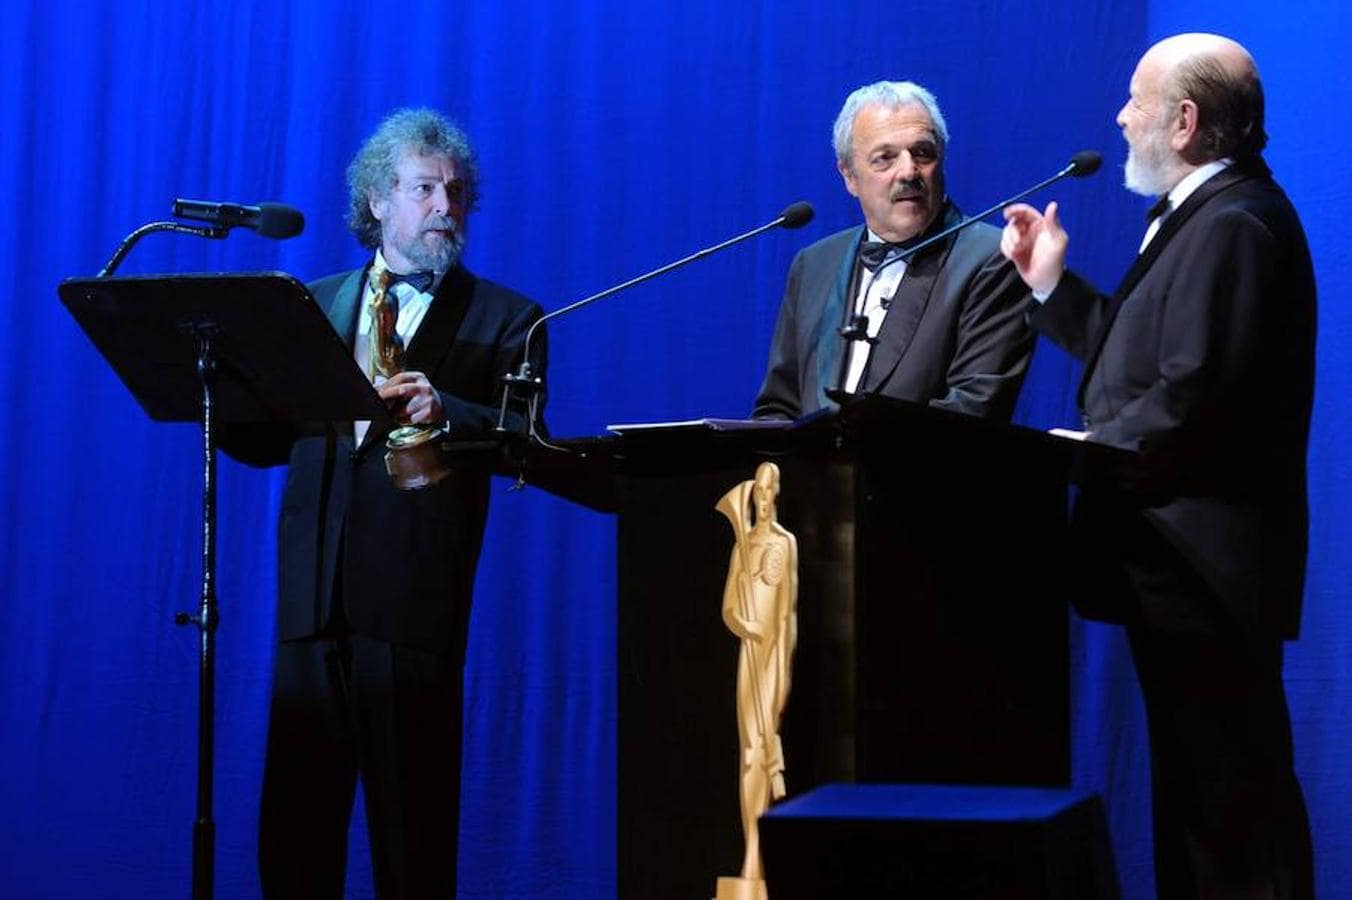 Les Luthiers, ganadores del premio Princesa de Asturias  de Comunicación y Humanidades 2017, cumplen 50 años sobre los escenarios